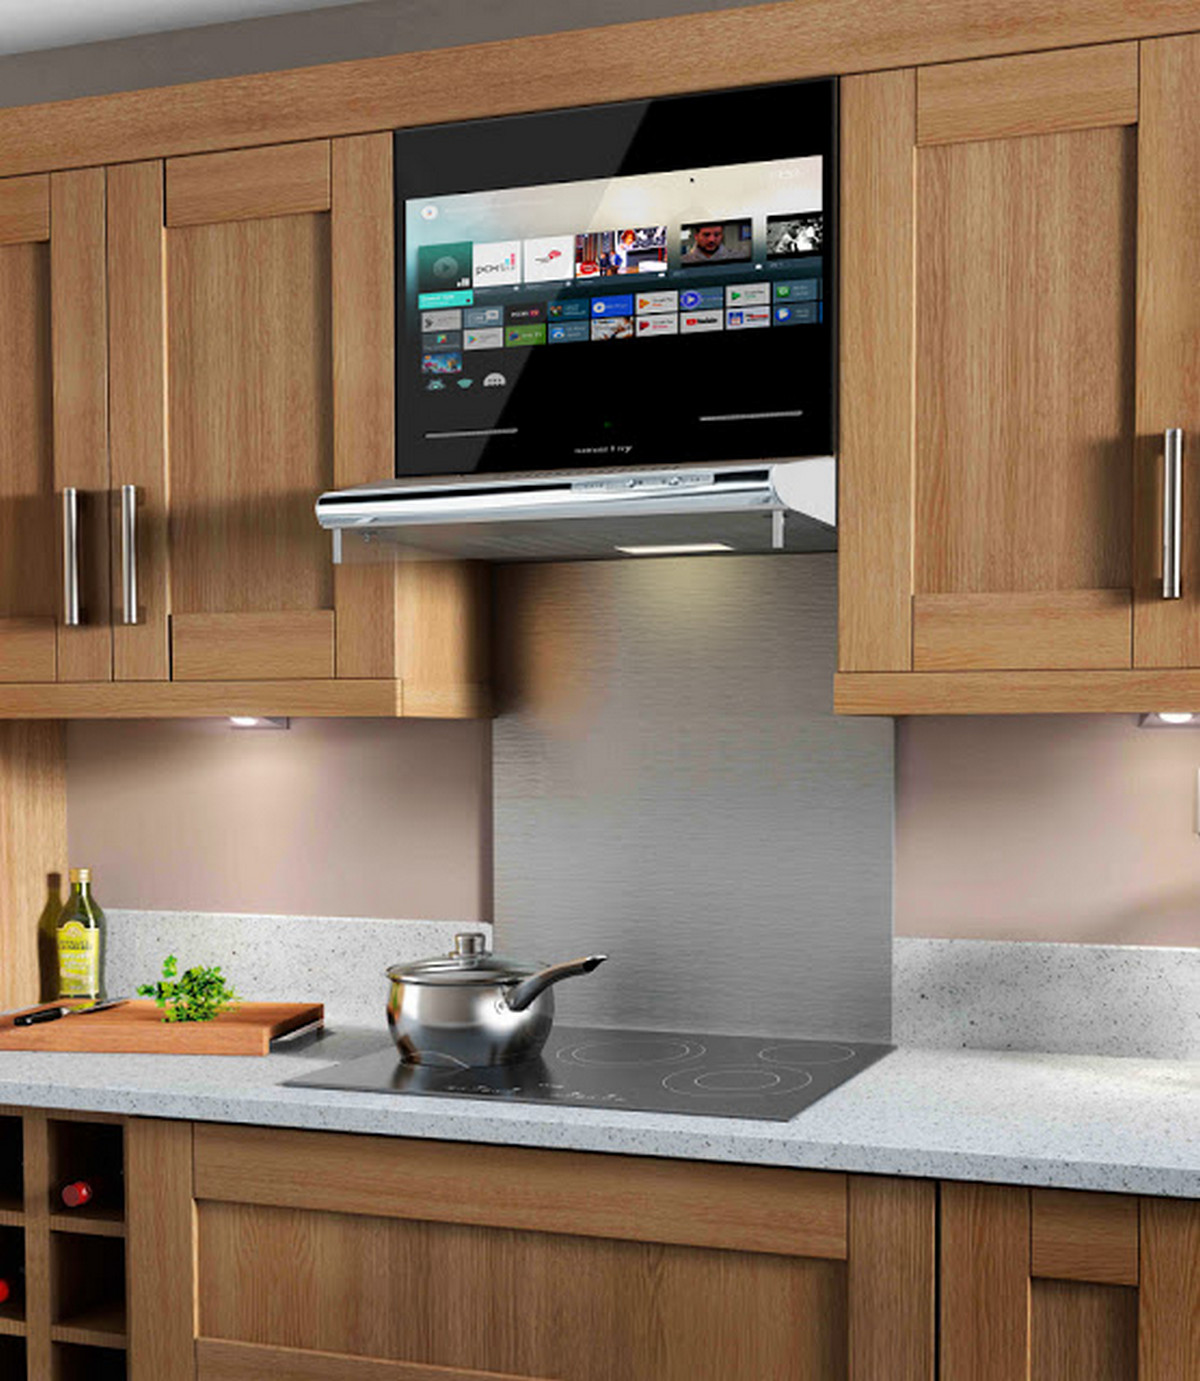 Телевизоры на кухню на авито. Встраиваемый телевизор для кухни. Телевизор встраиваемый в кухонный гарнитур. Встроенный телевизор в кухонный гарнитур. Встраиваемые кухни.